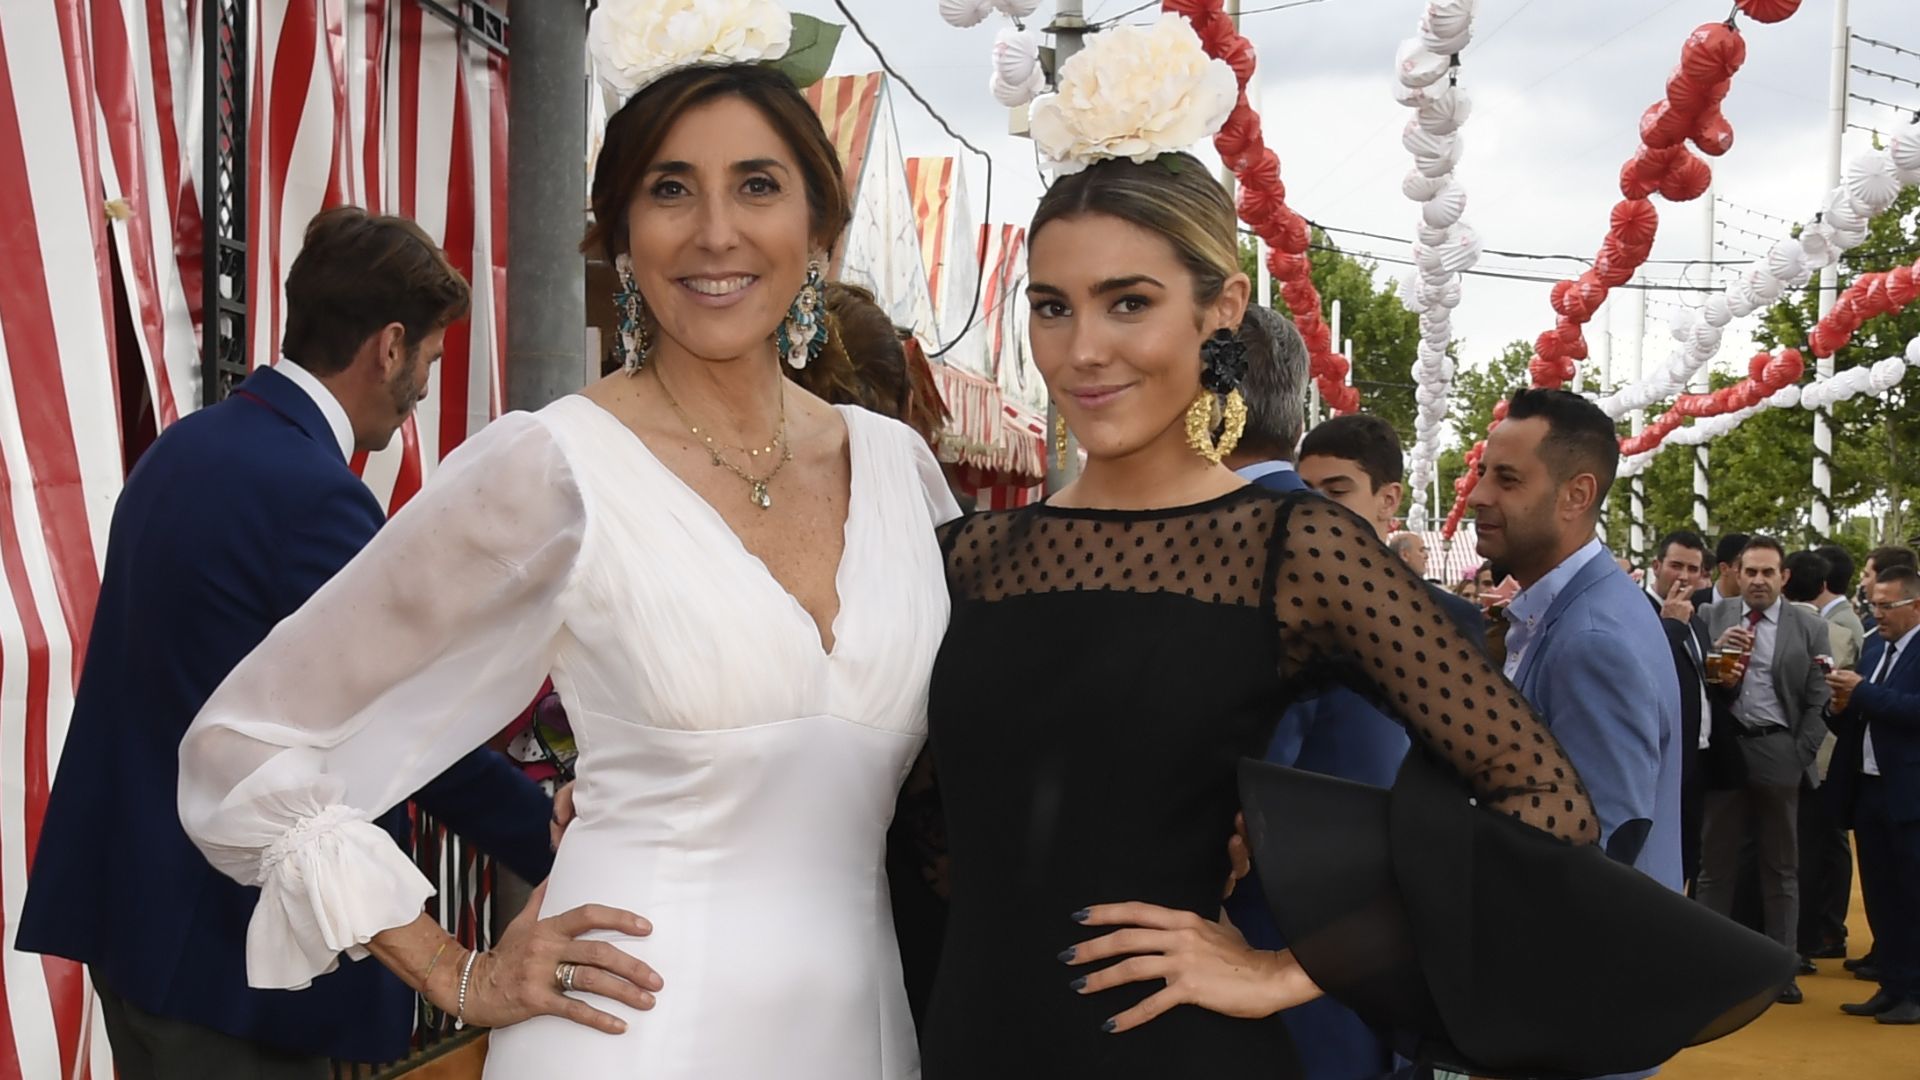 Paz Padilla y Ferrer compiten en estilo sus vestidos de 'gitana'